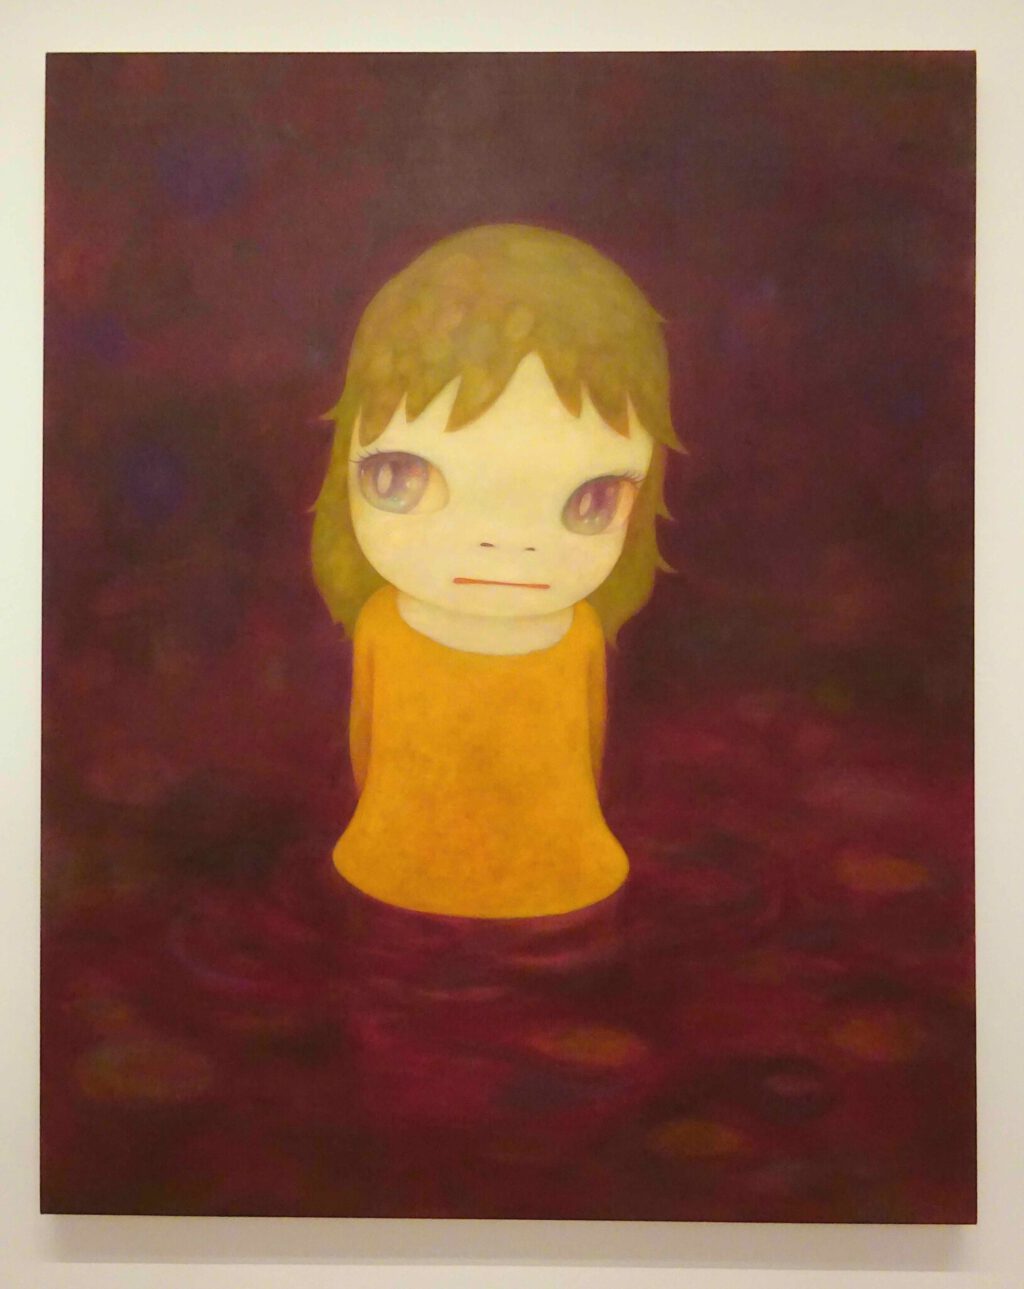 奈良美智 NARA Yoshitomo After the Acid Rain 「酸雨过后 (簡体) 」2006. Acrylic on canvas, 227 x 182 cm. Private collection